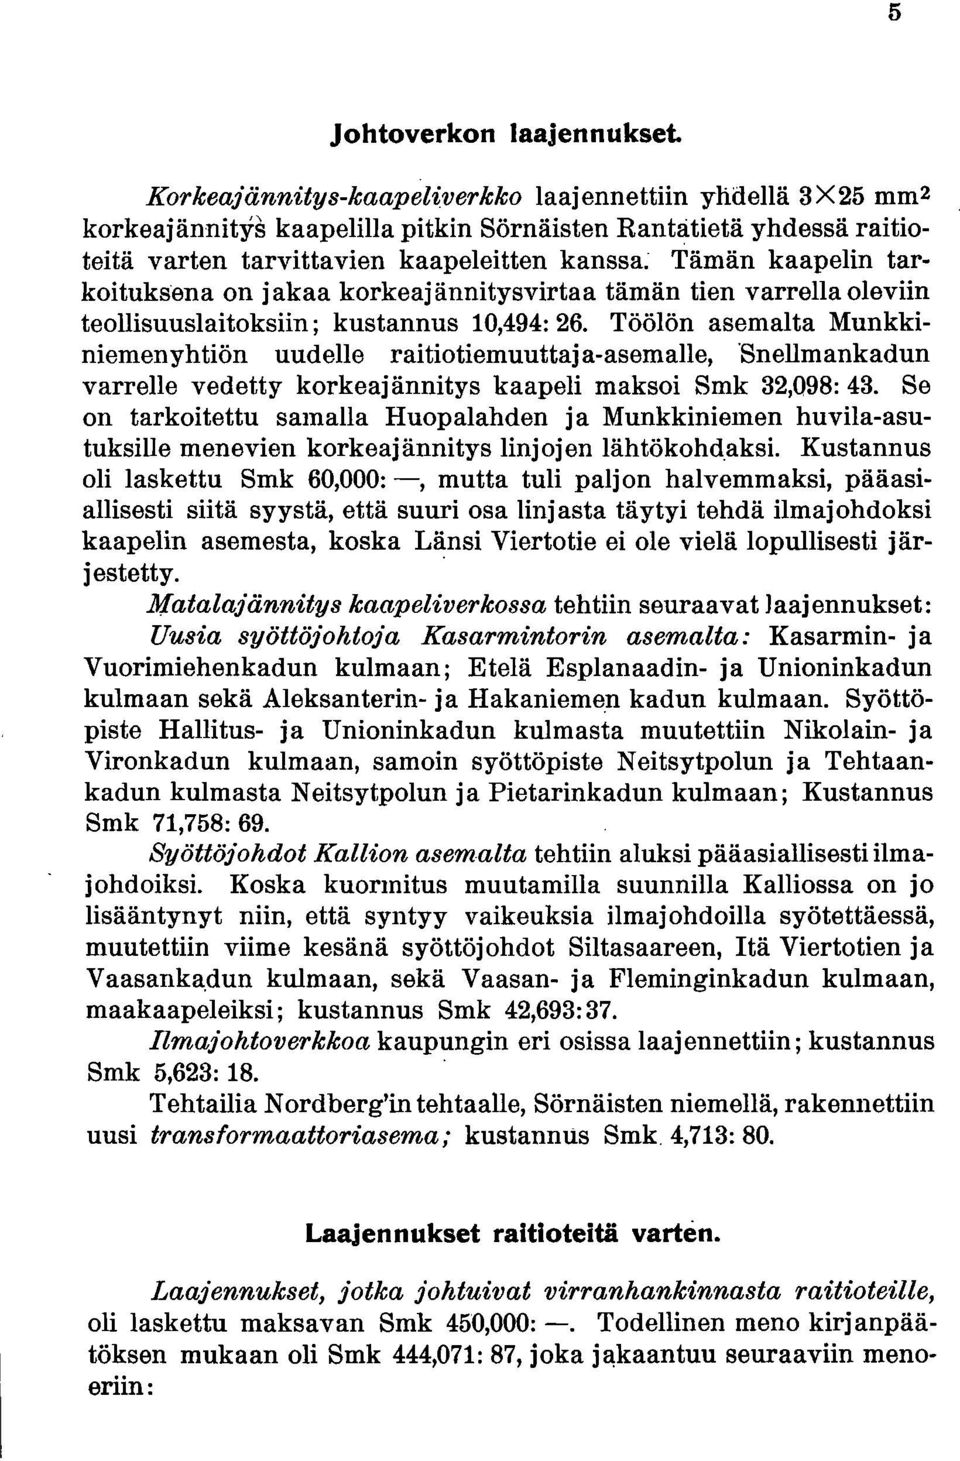 Töölön asemalta Munkkiniemenyhtiön uudelle raitiotiemuuttaja-asemalle, Snellmankadun varrelle vedetty korkeajännitys kaapeli maksoi Smk 32,098: 43.